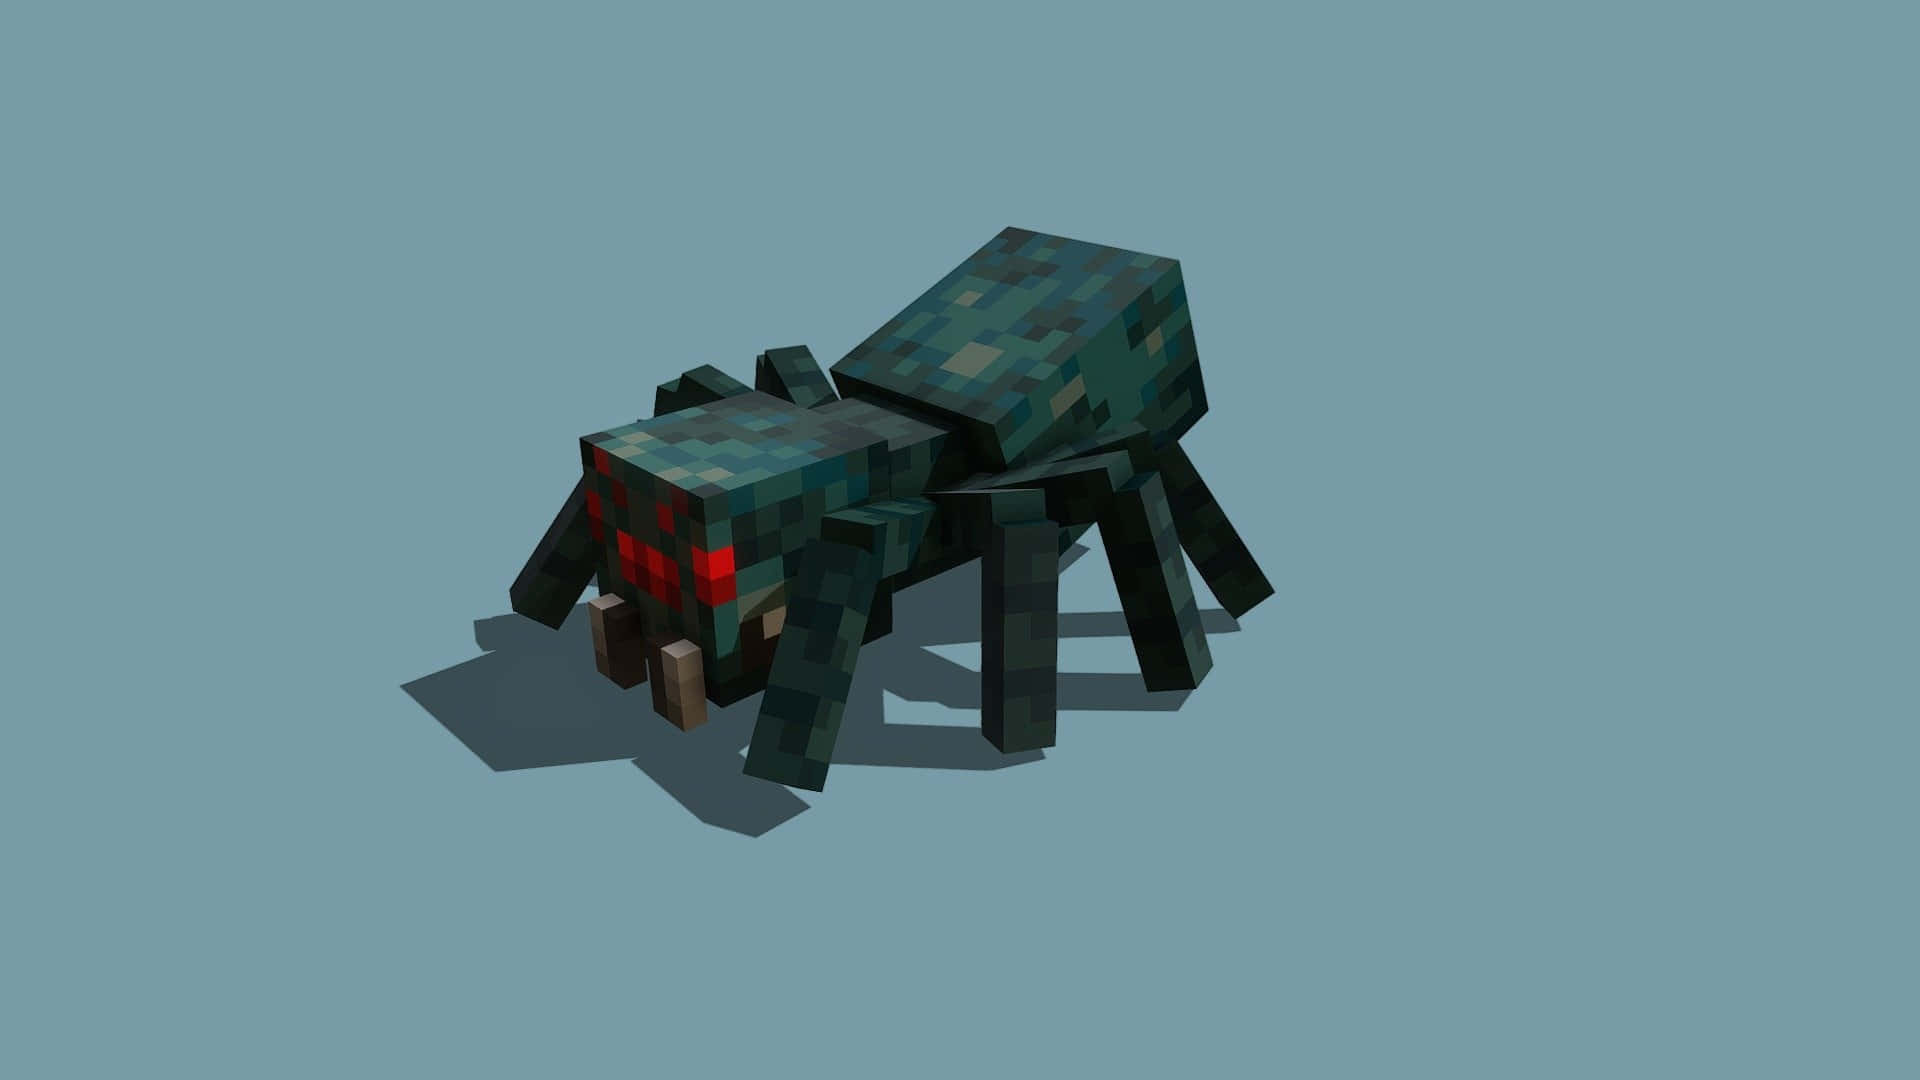 Ferocious Minecraft Spider in Action Wallpaper